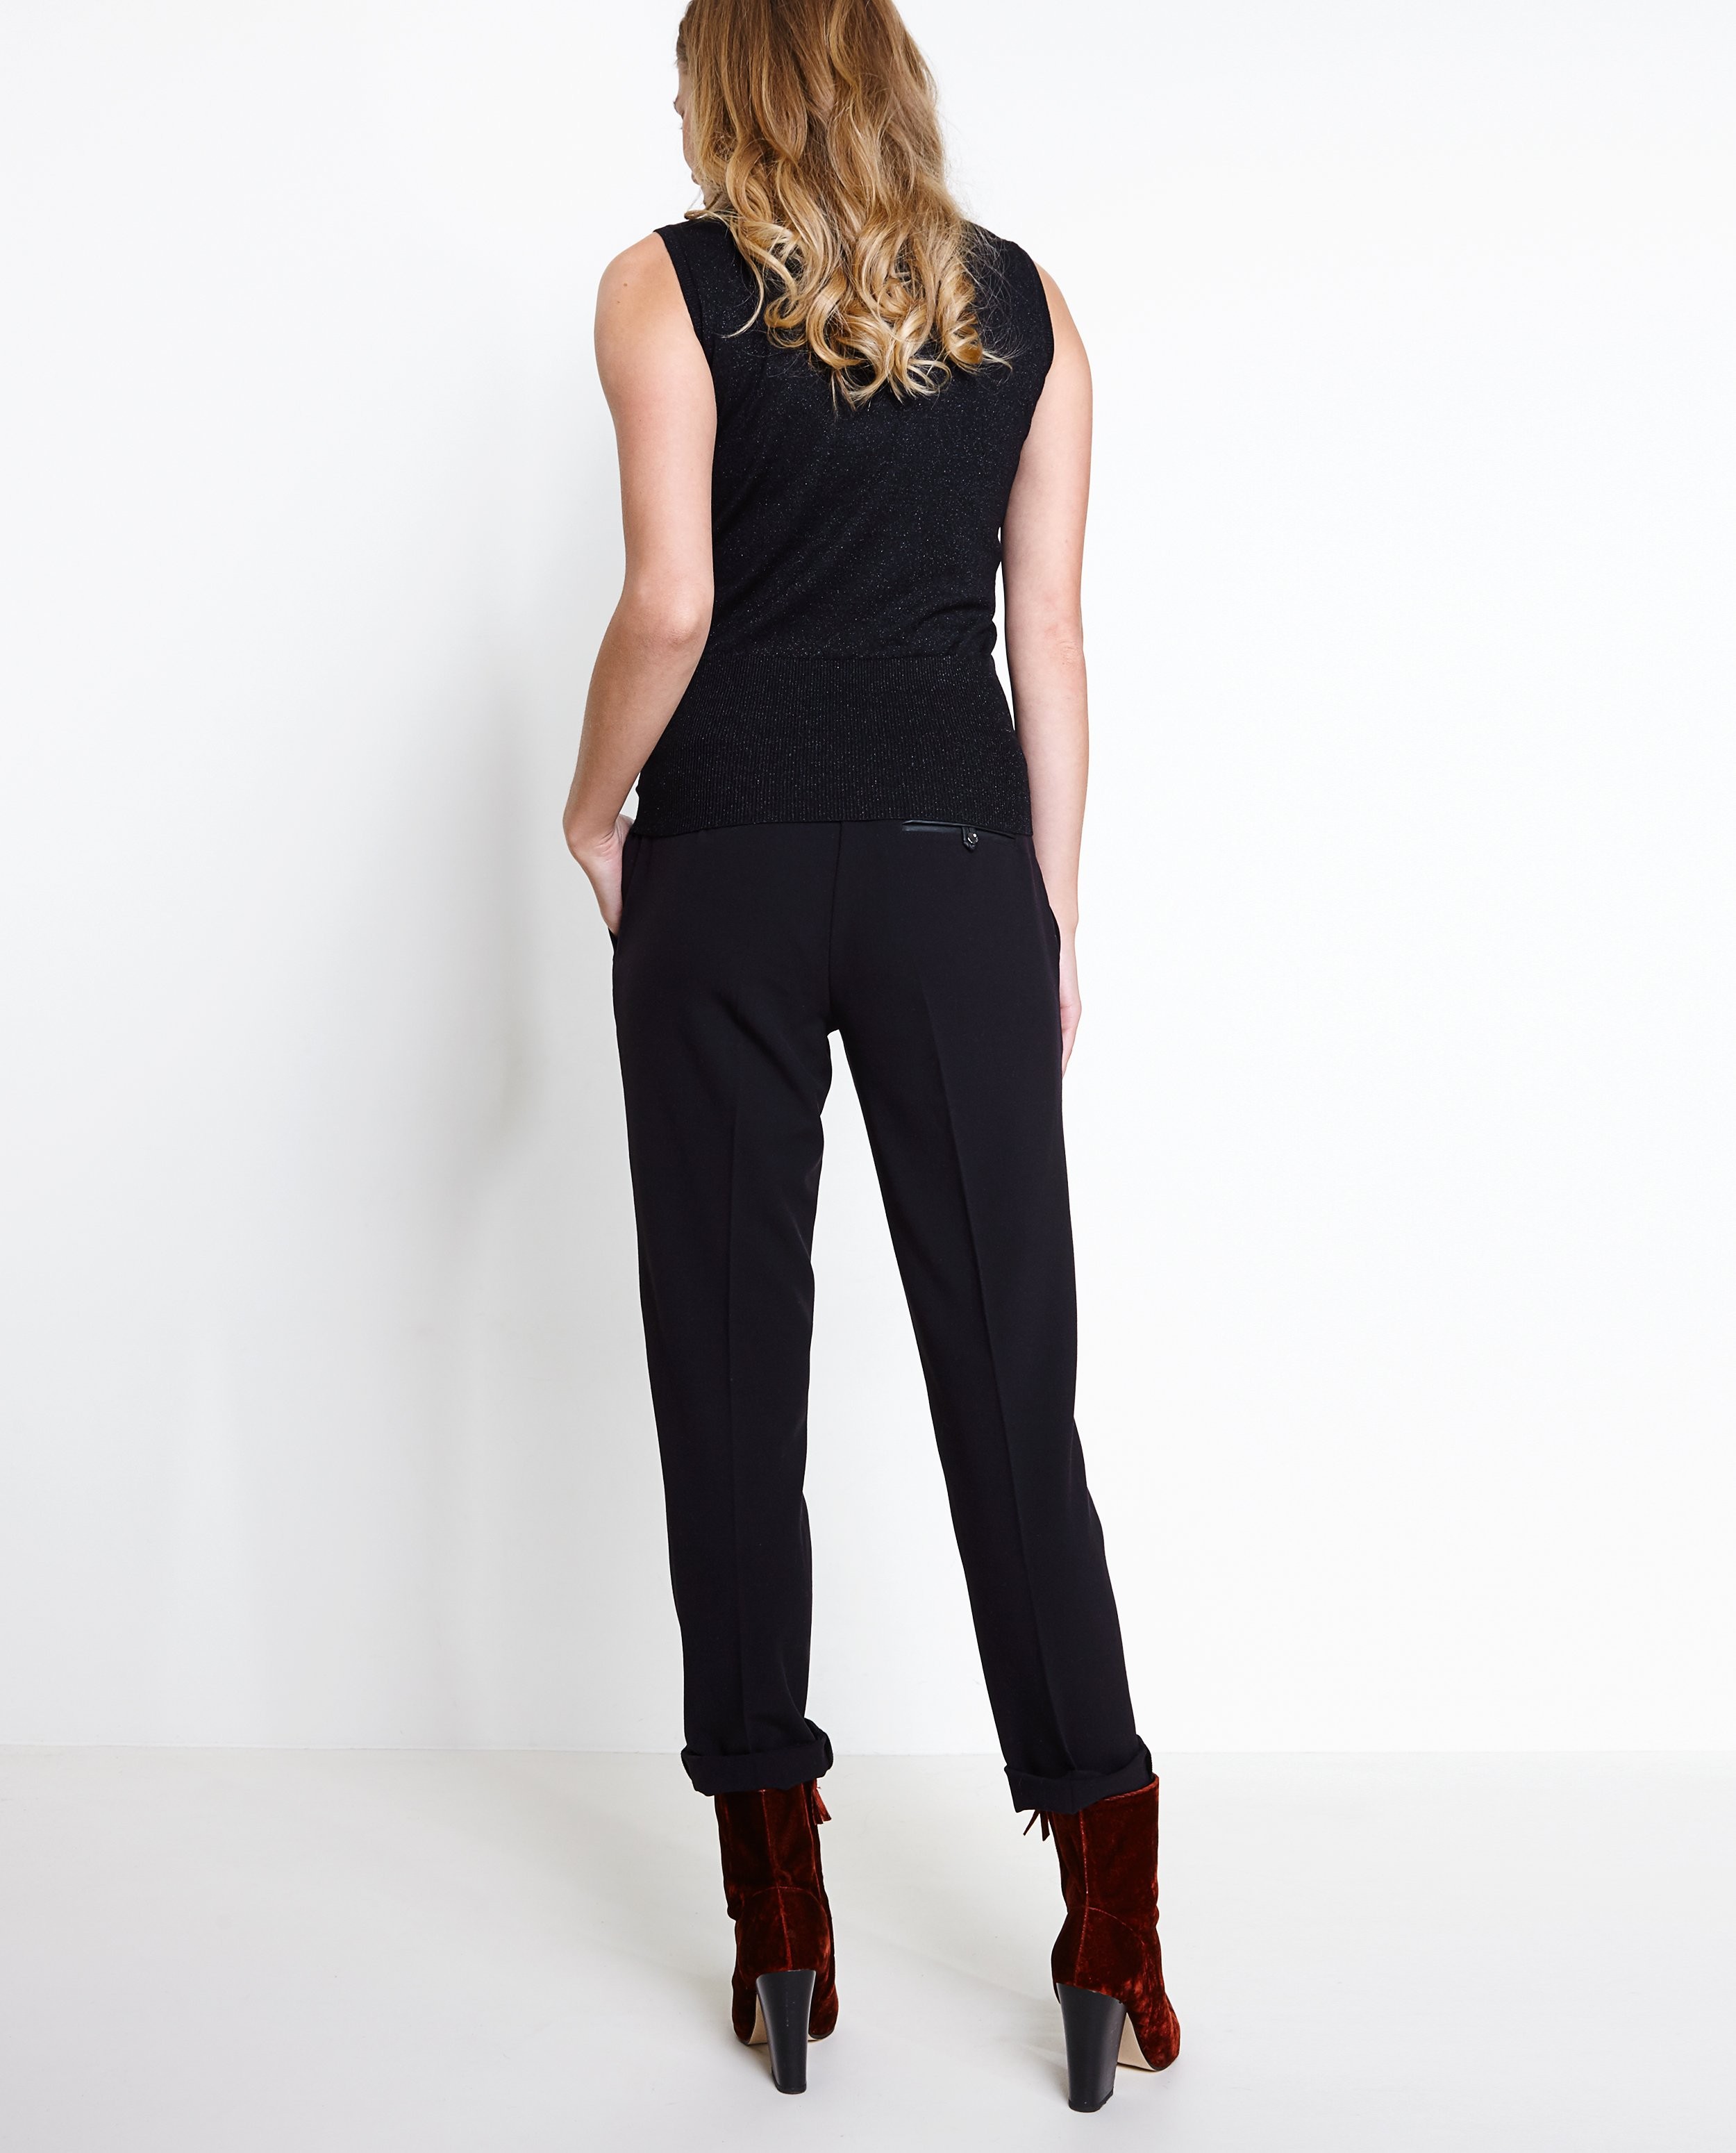 Pantalons - Zwarte geklede broek